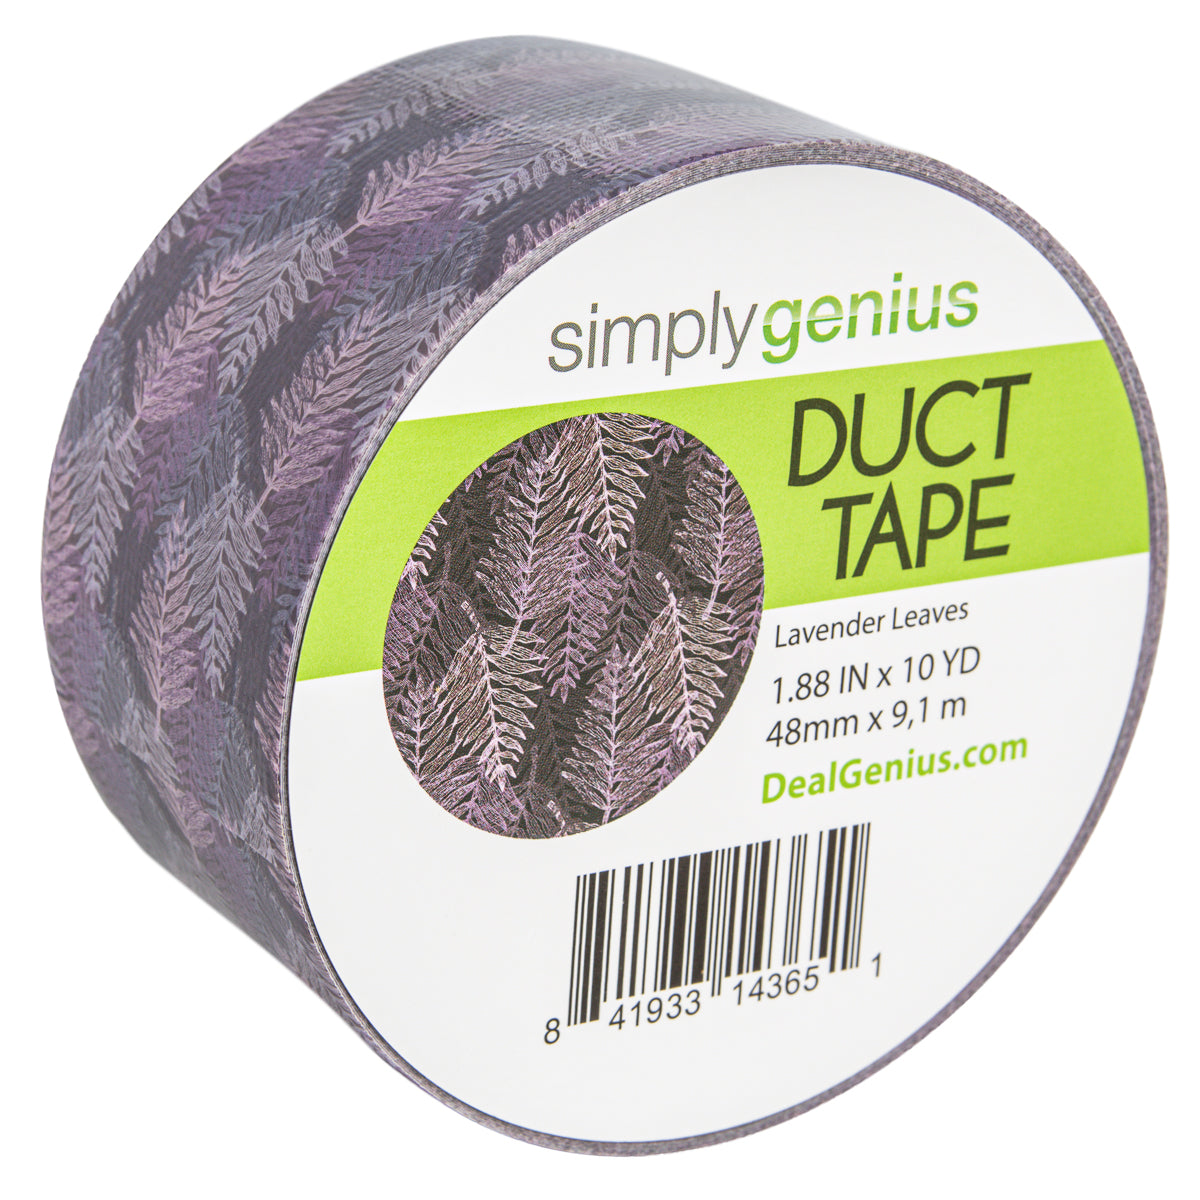 Wallflower Pattern Duct Tape - 2 rolls available, - Depop